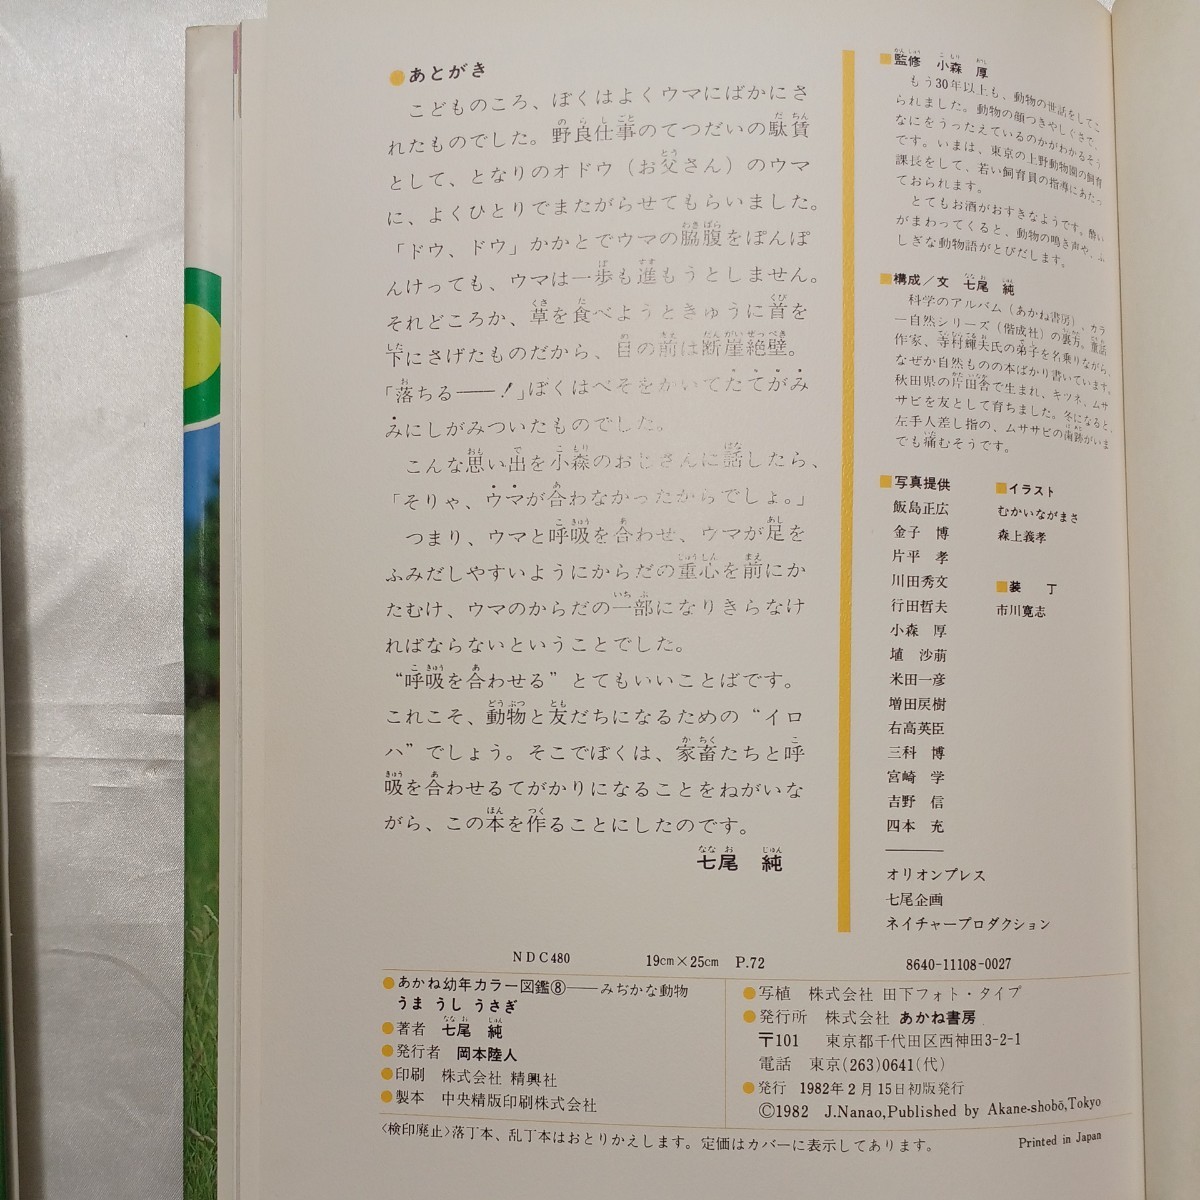 zaa-474♪うま・うし・うさぎ あかね幼年カラー図鑑8 みじかな動物 七尾純(著) あかね書房 (1982/2/15)